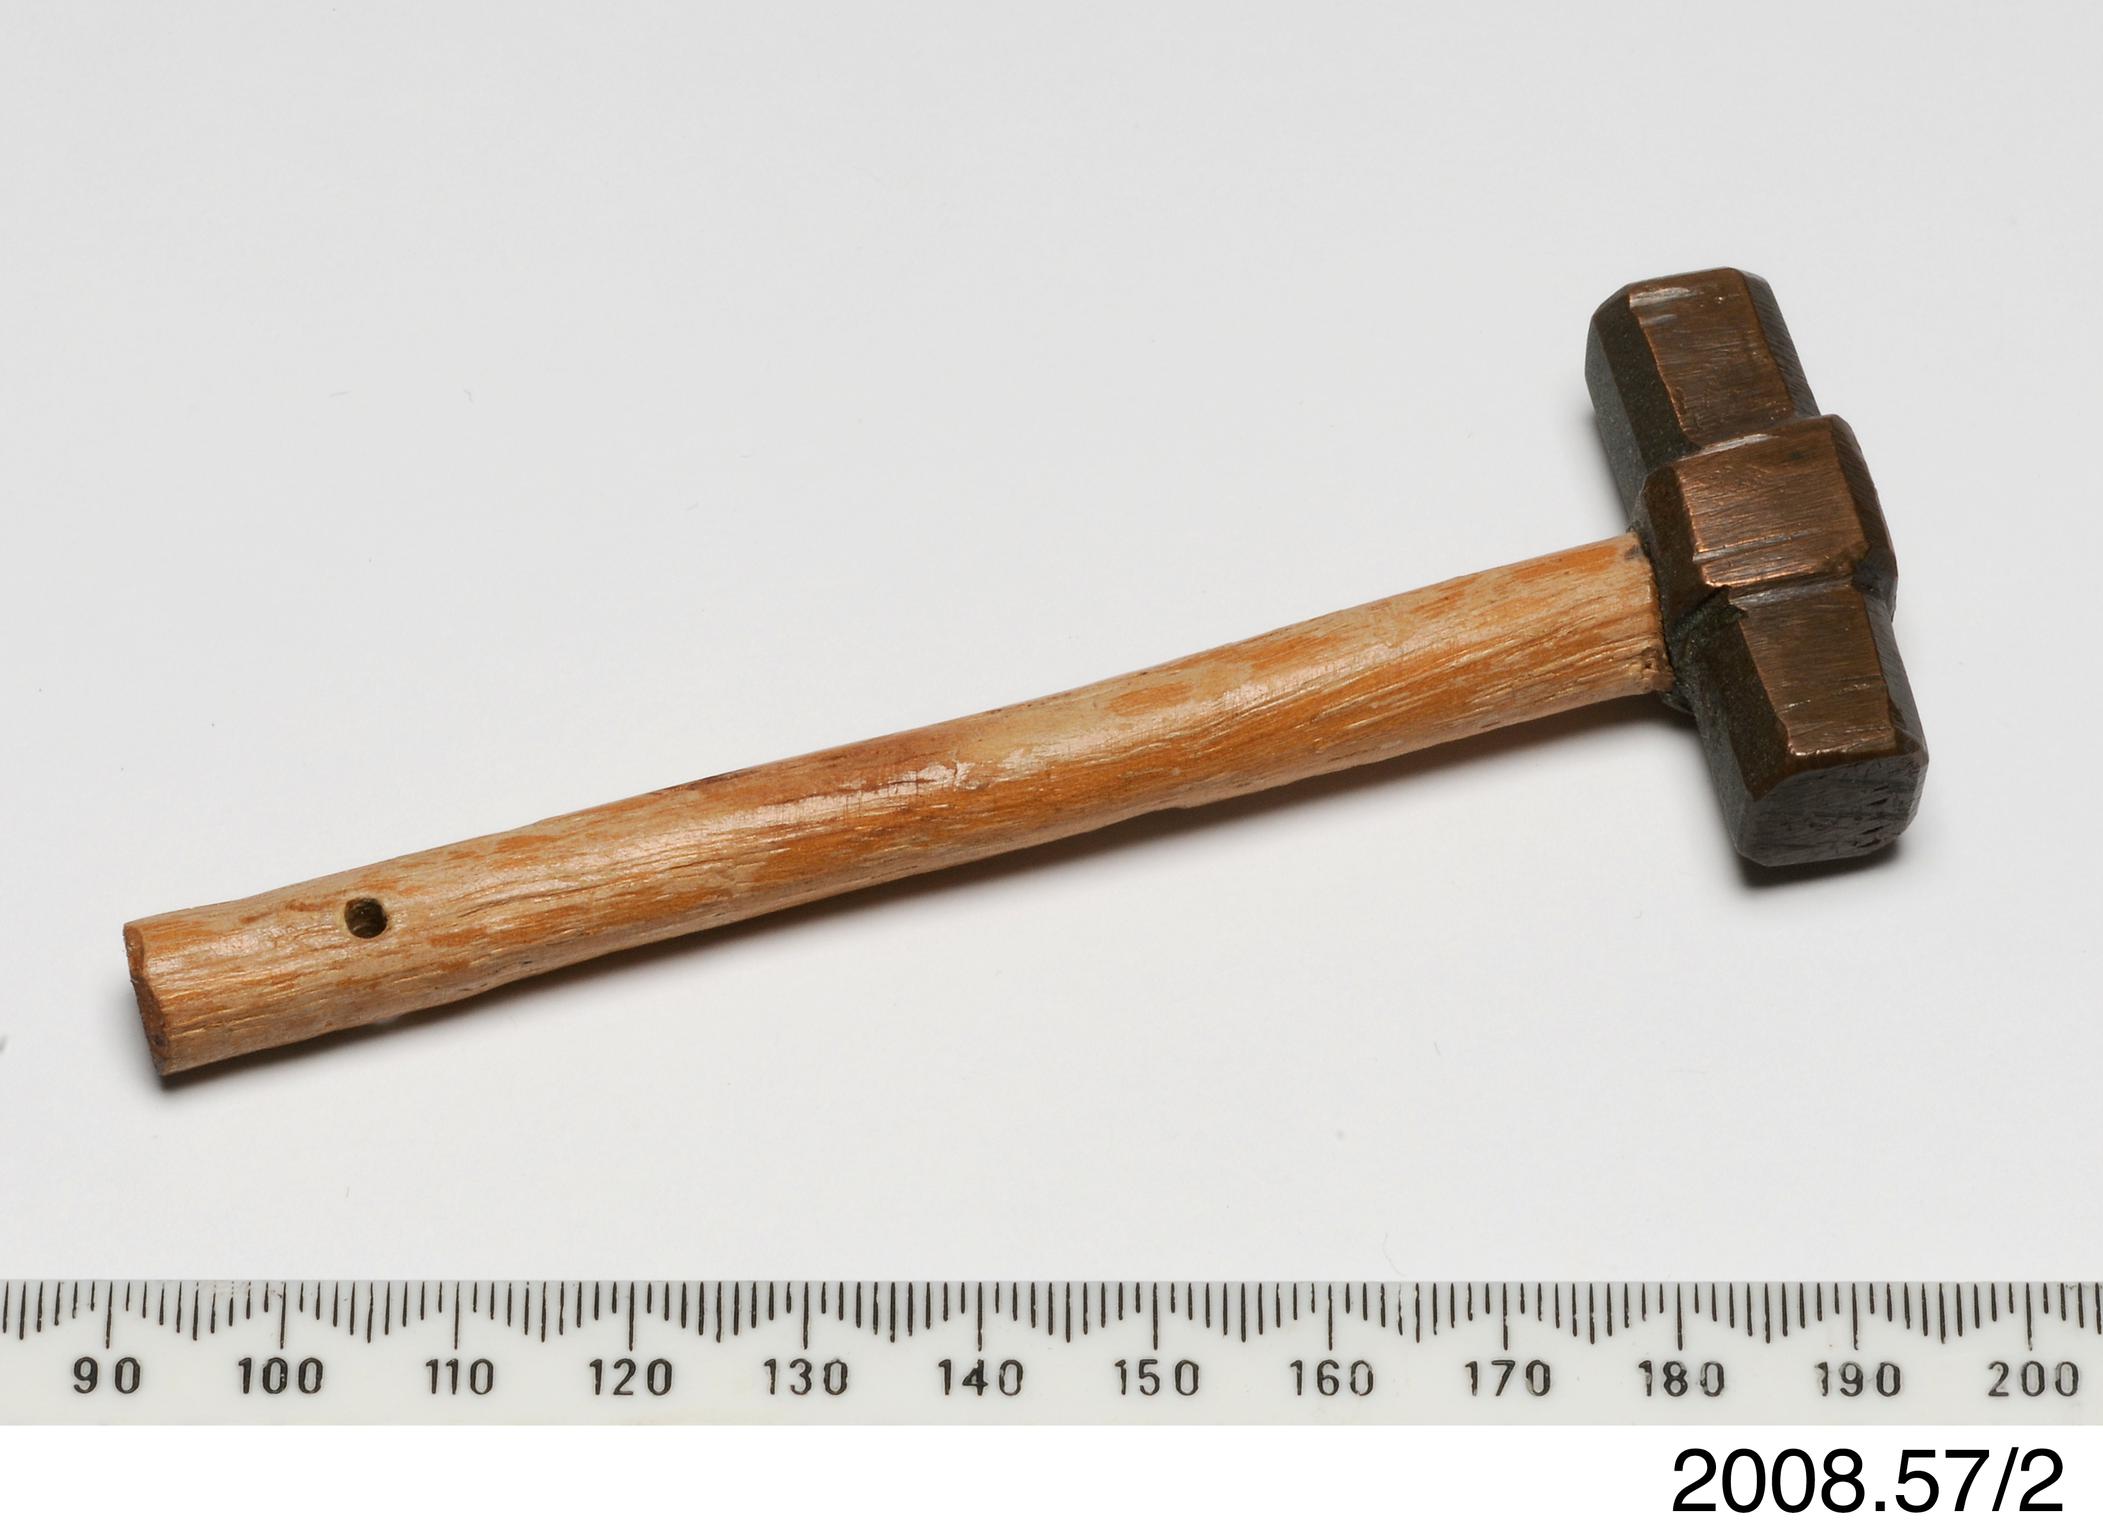 Model of sledge hammer